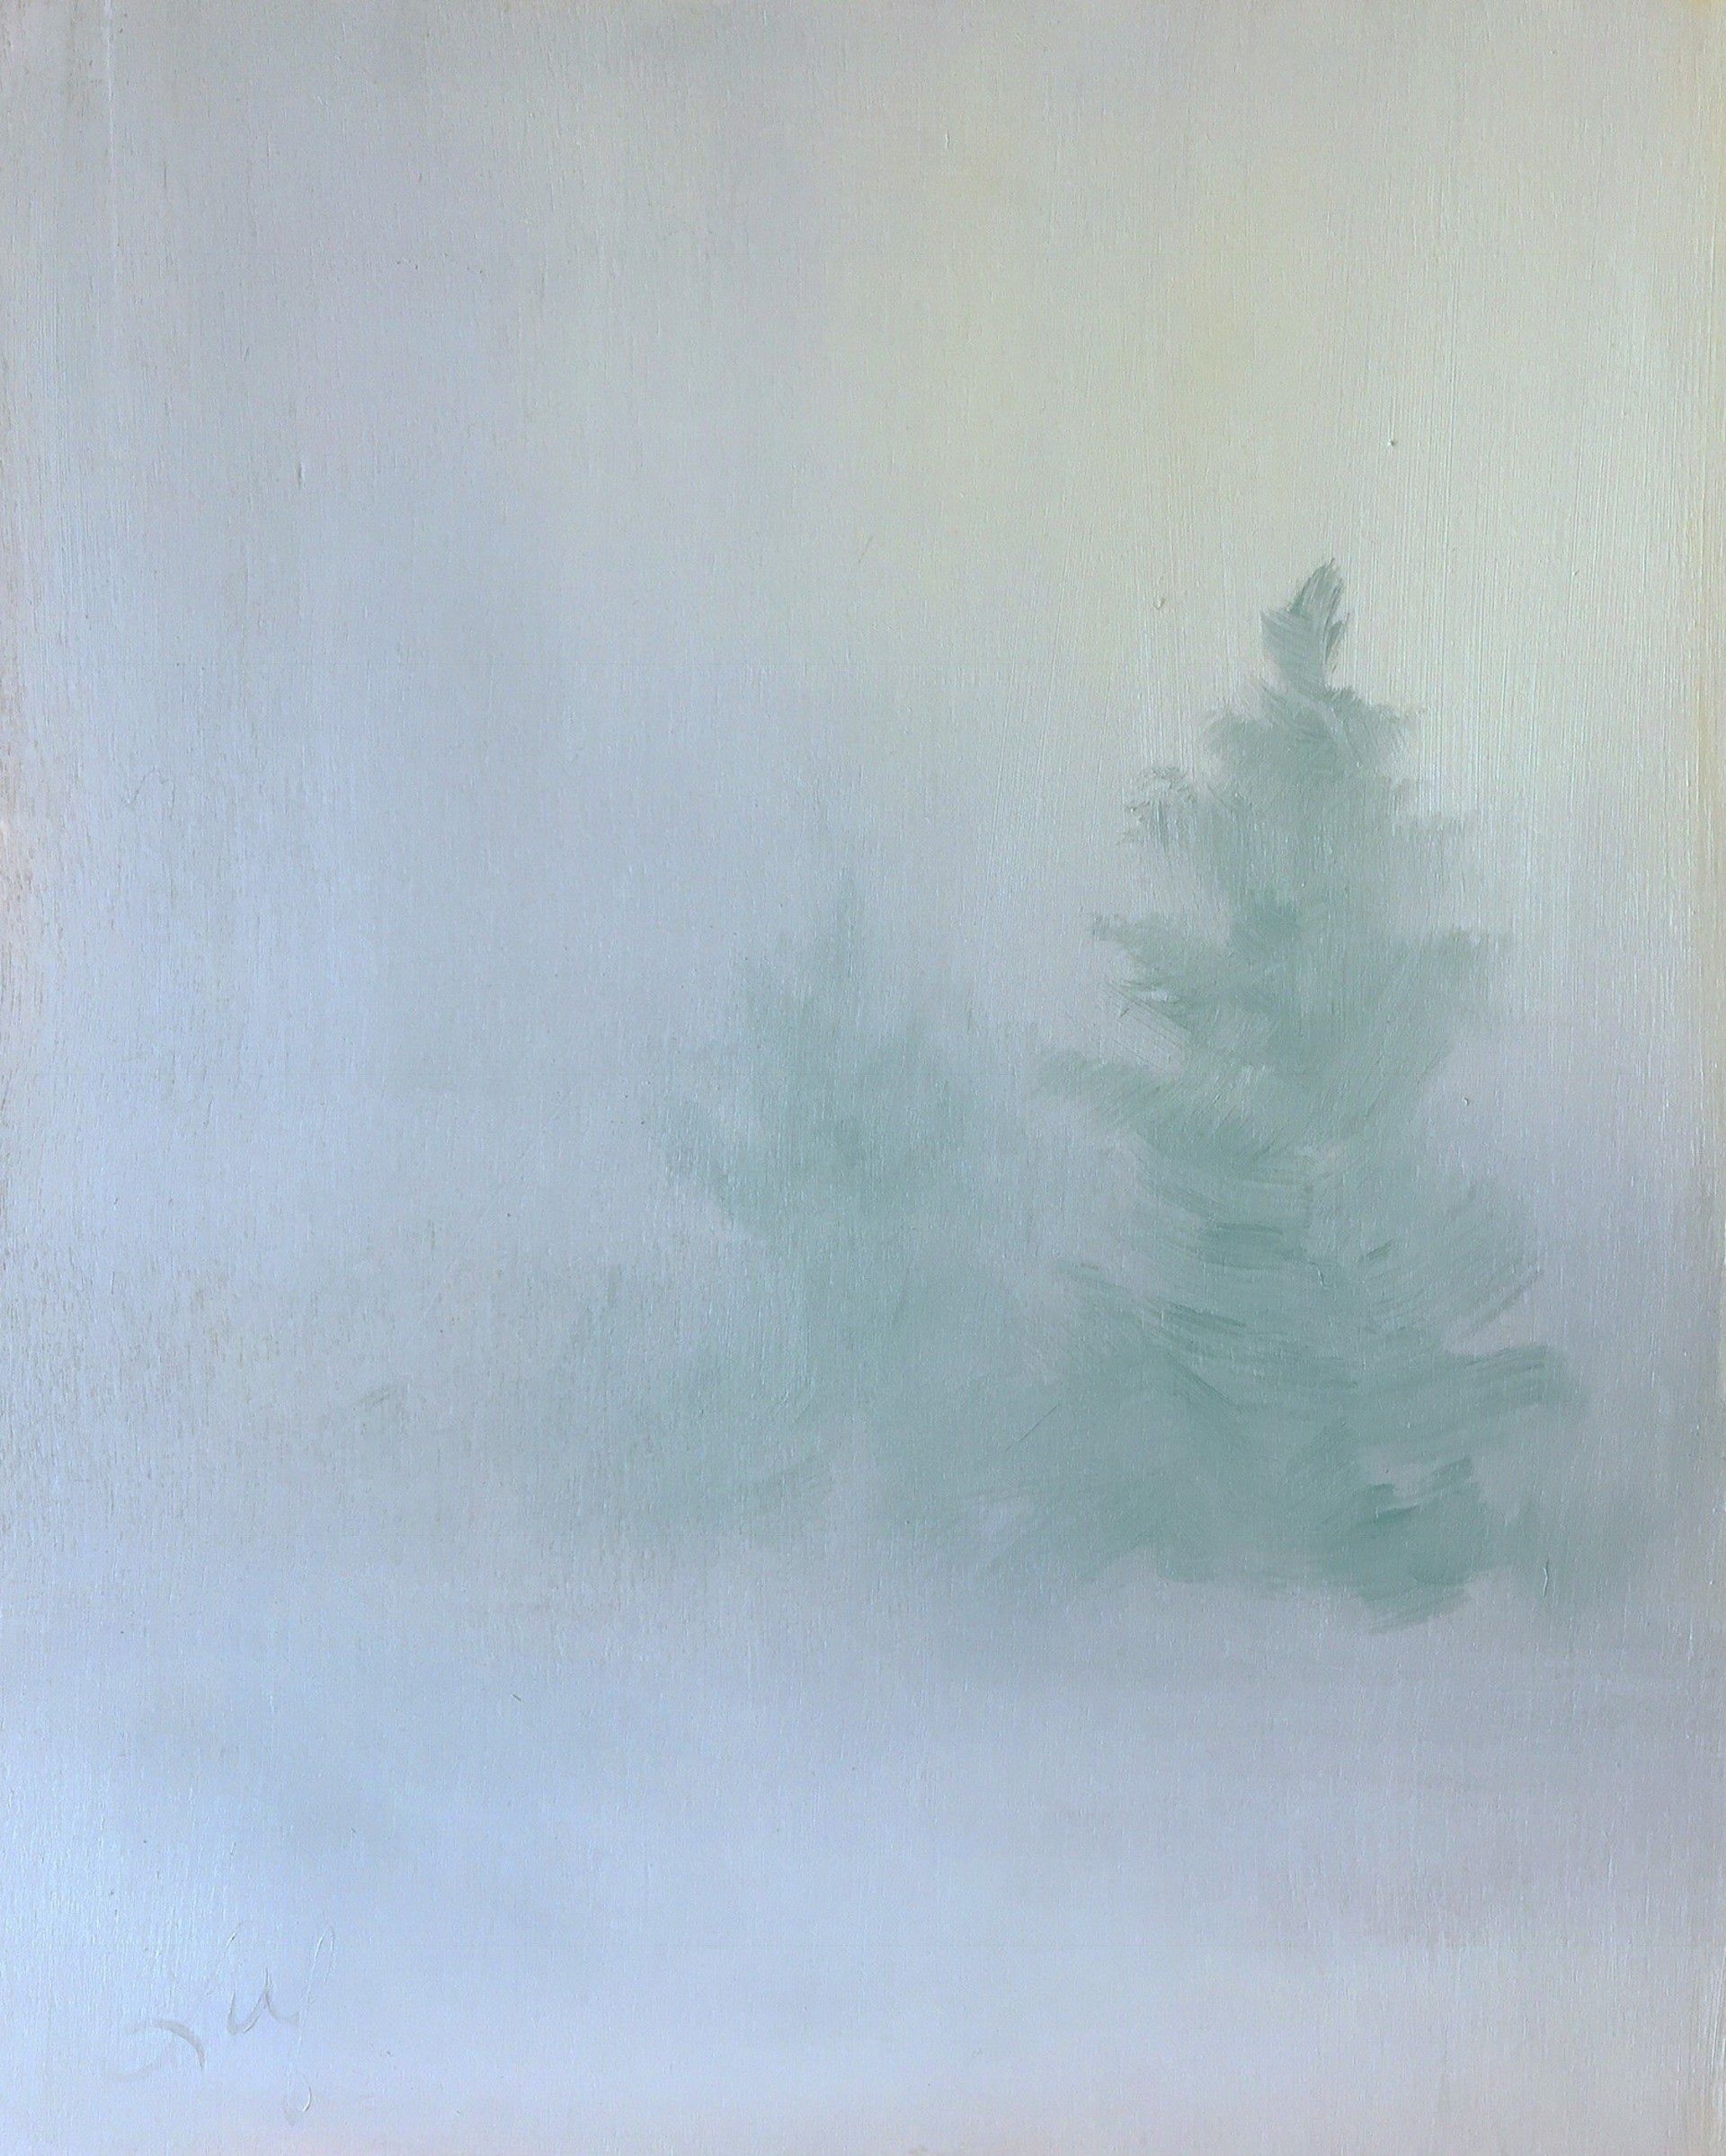 December by Leigh Ann Van Fossan